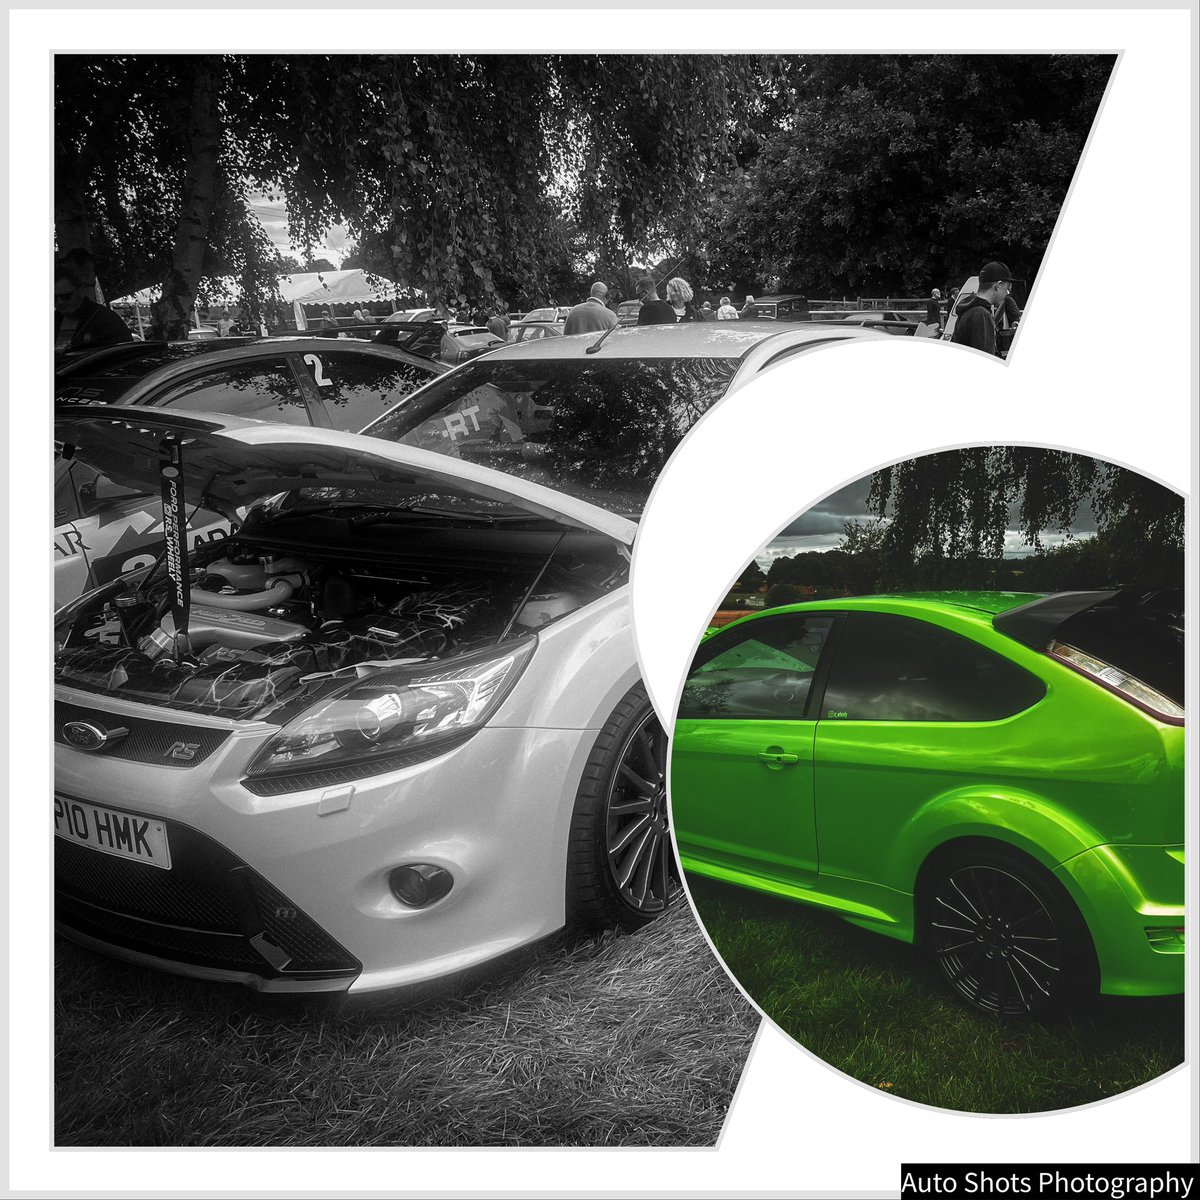 Ford Focus RS

#focusrs #ford #mk #focusst #rs #fordperformance #fordfocus #focus #st #focusrsmk #fordfocusrs #hothatch #focusmk #fastford #carsofinstagram #fordracing #ecoboost #turbo #fiestast #fordfocusst #cars #carporn #fordsofinstagram #fordrs #mountune #car #fordst #gt